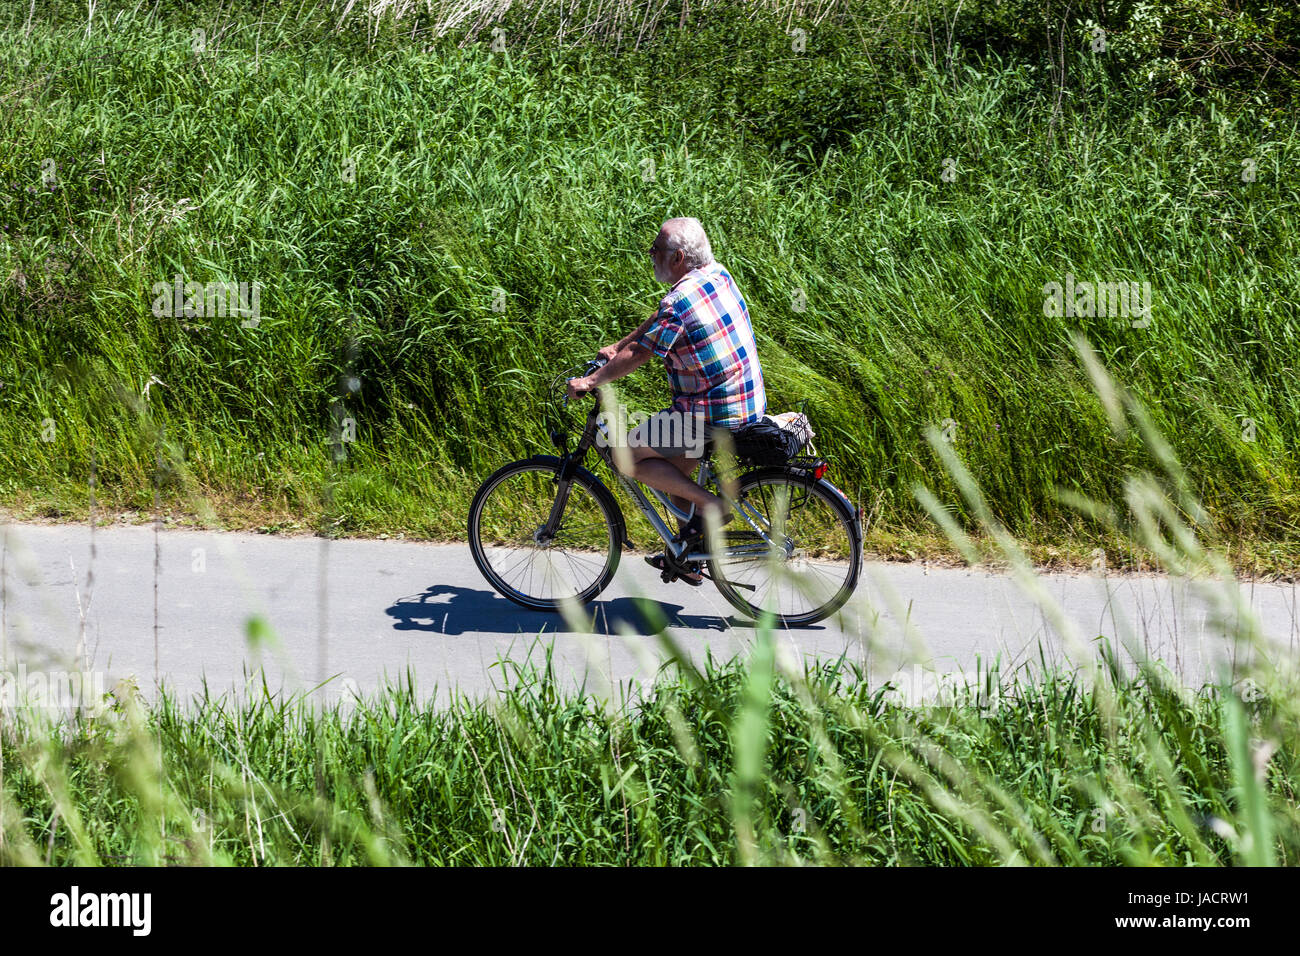 Ciclista tedesca, un uomo che guida una bici sassone Svizzera regione, Bad Schandau, Sassonia, Germania, Europa senior riding bike Foto Stock